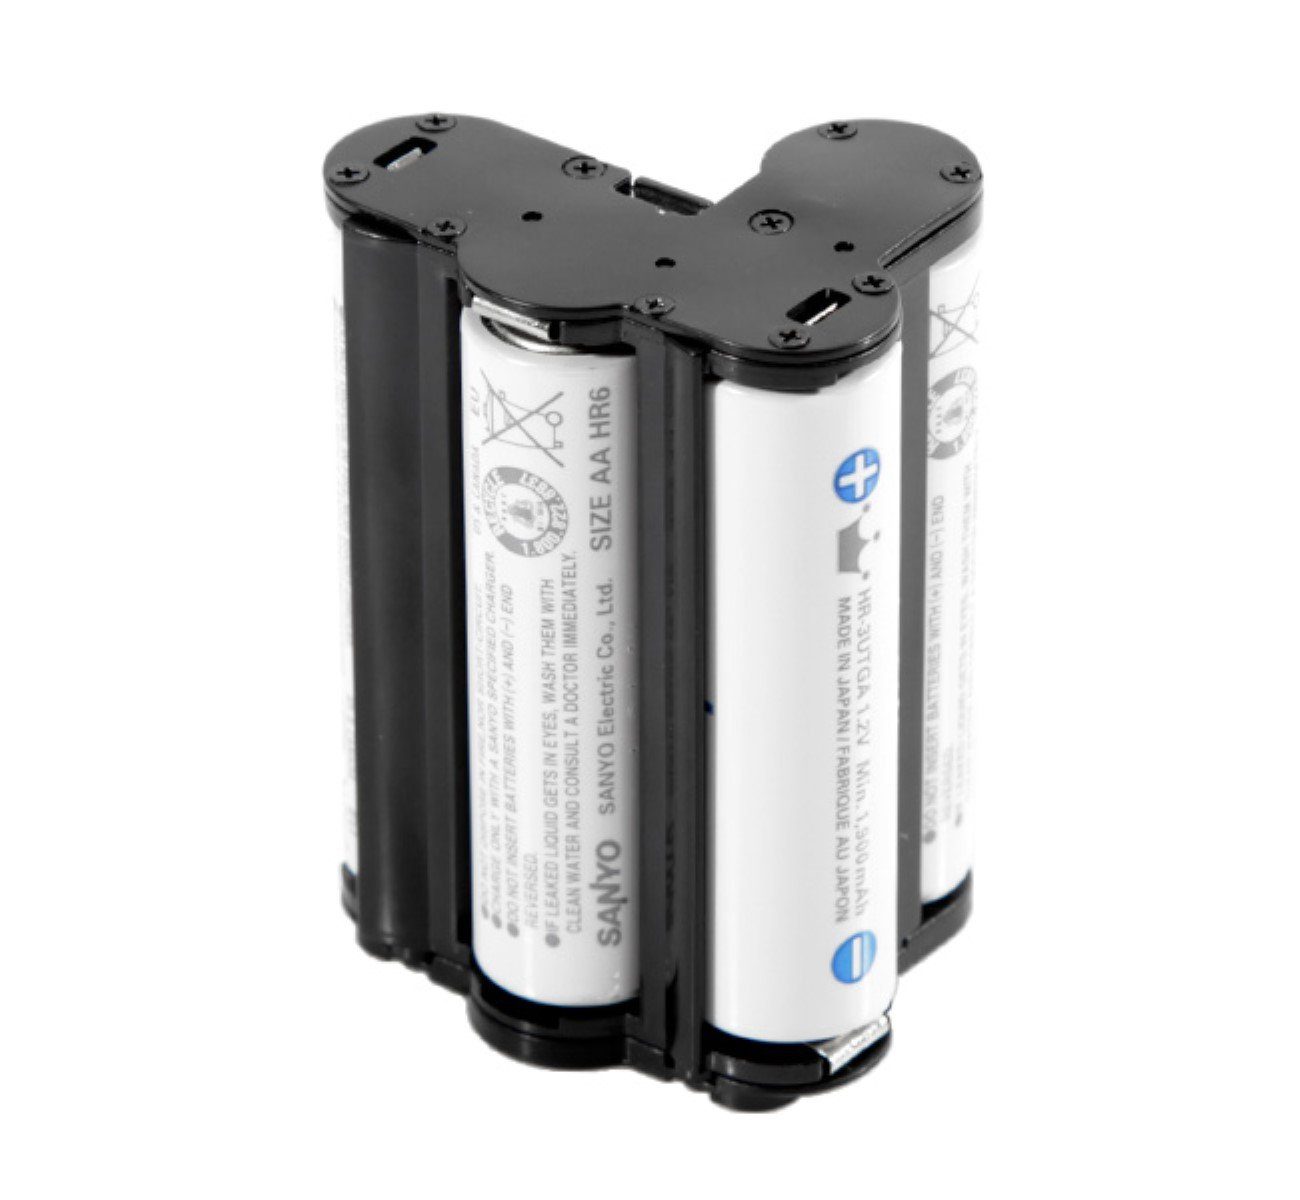 Batteriehalter K-S1 ayex Akku K-50 K-R K-30 Battery für K-500 Holder Pentax K-S2